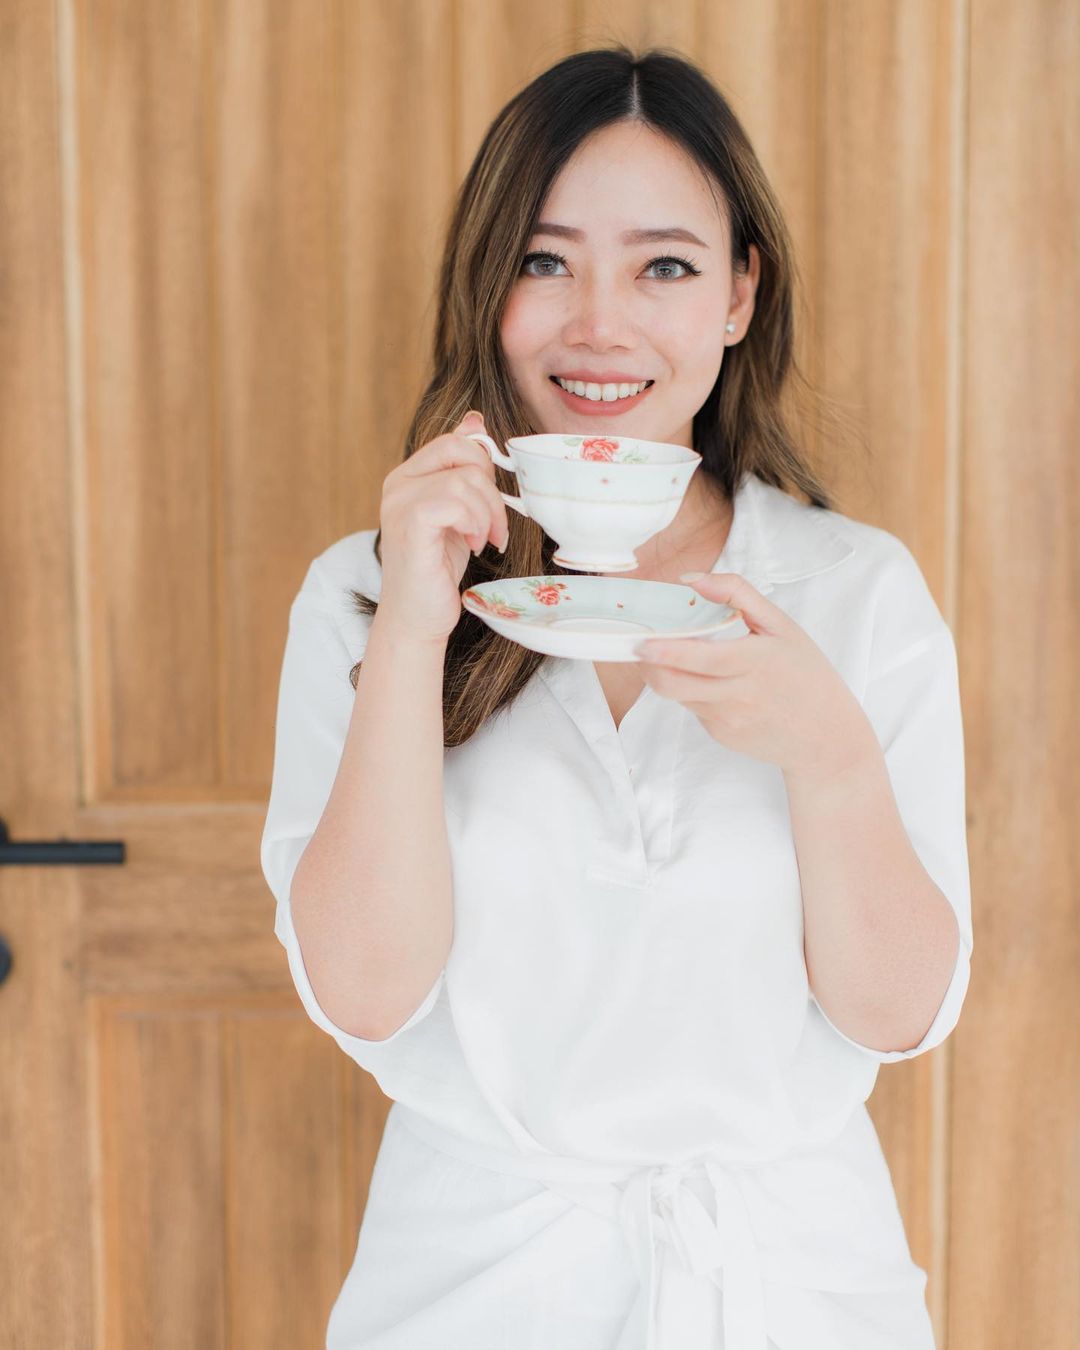 berawal dari hobi teh, wanita cantik ini sukses kembangkan bisnis